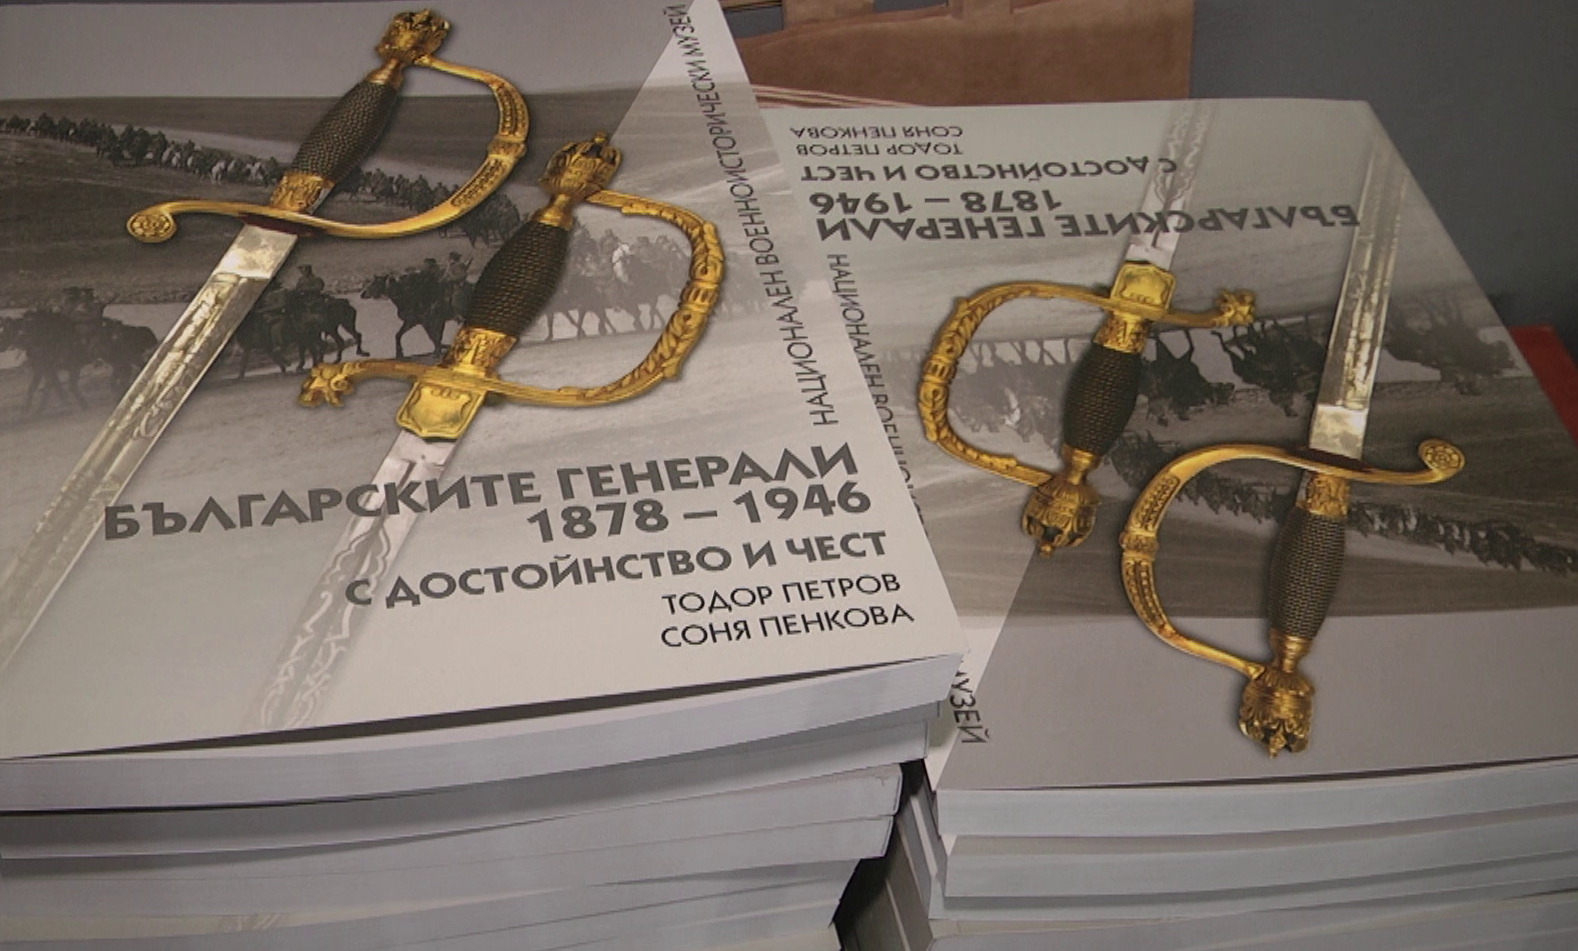 В НВИМ представиха първия том от поредицата „Българските генерали 1878 – 1946. С достойнство и чест“